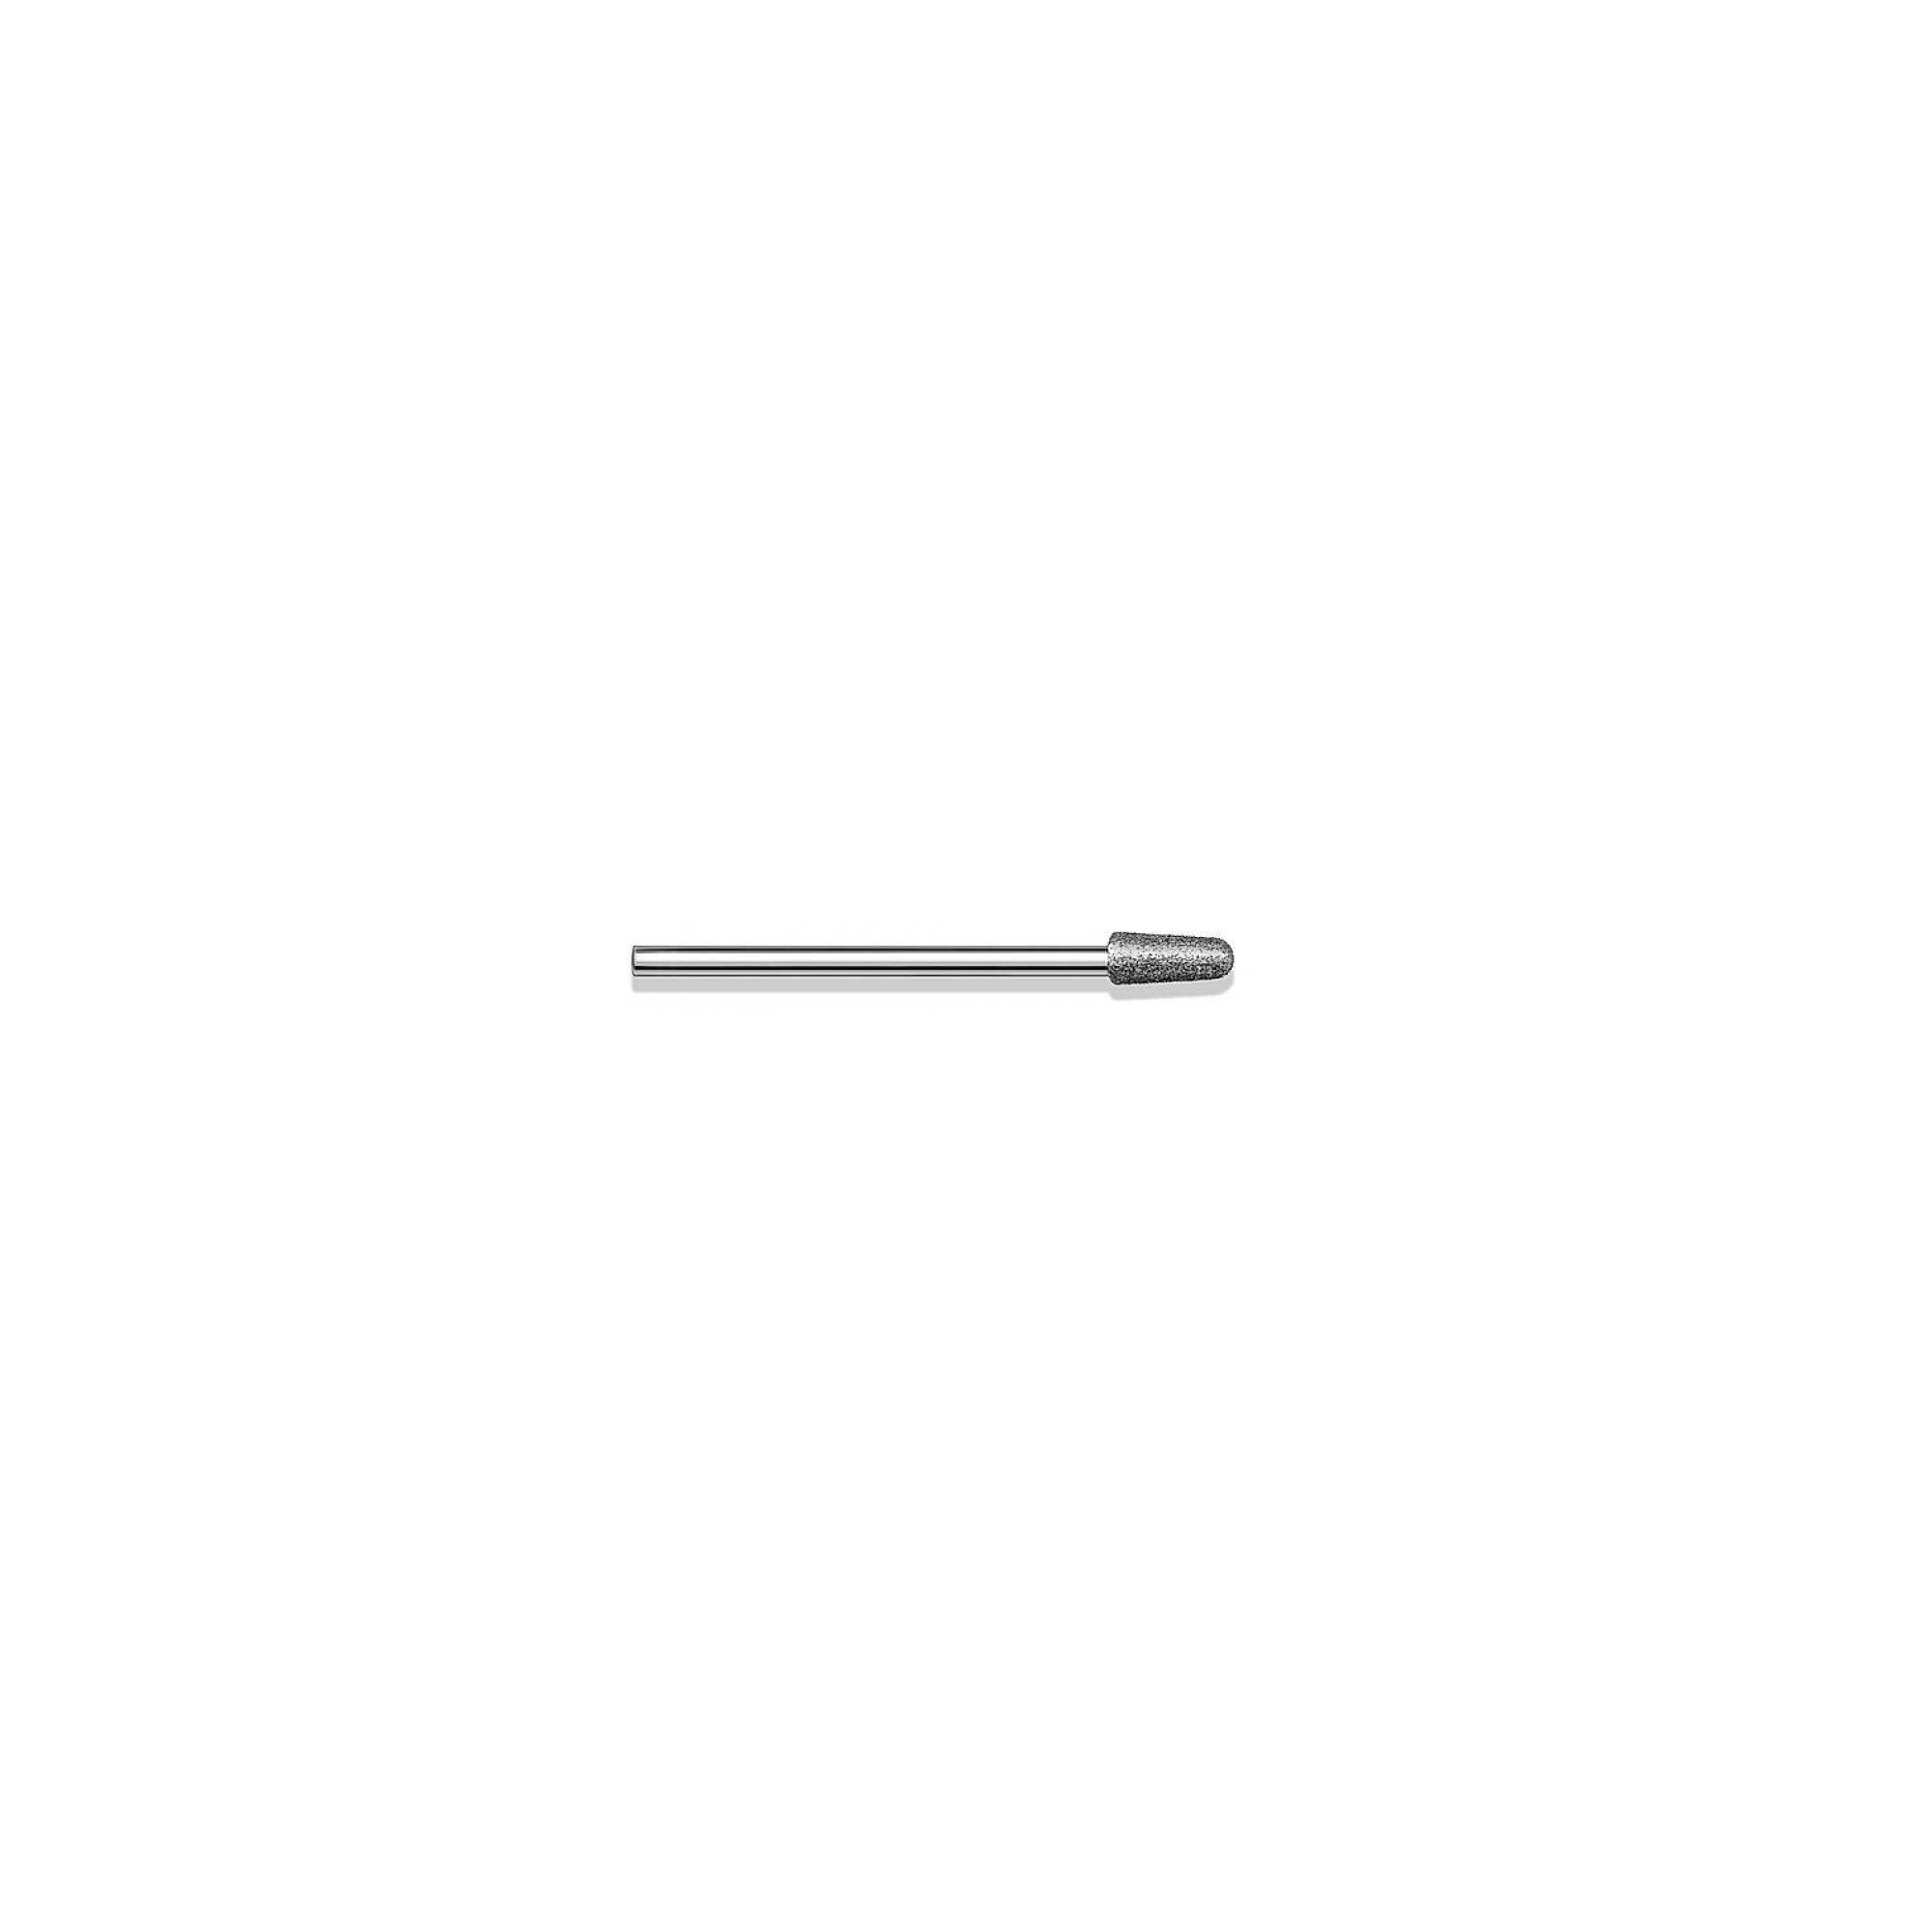 Fraise diamantée standard - Lissage des ongles et des callosités - Grain moyen - ø4,0mm